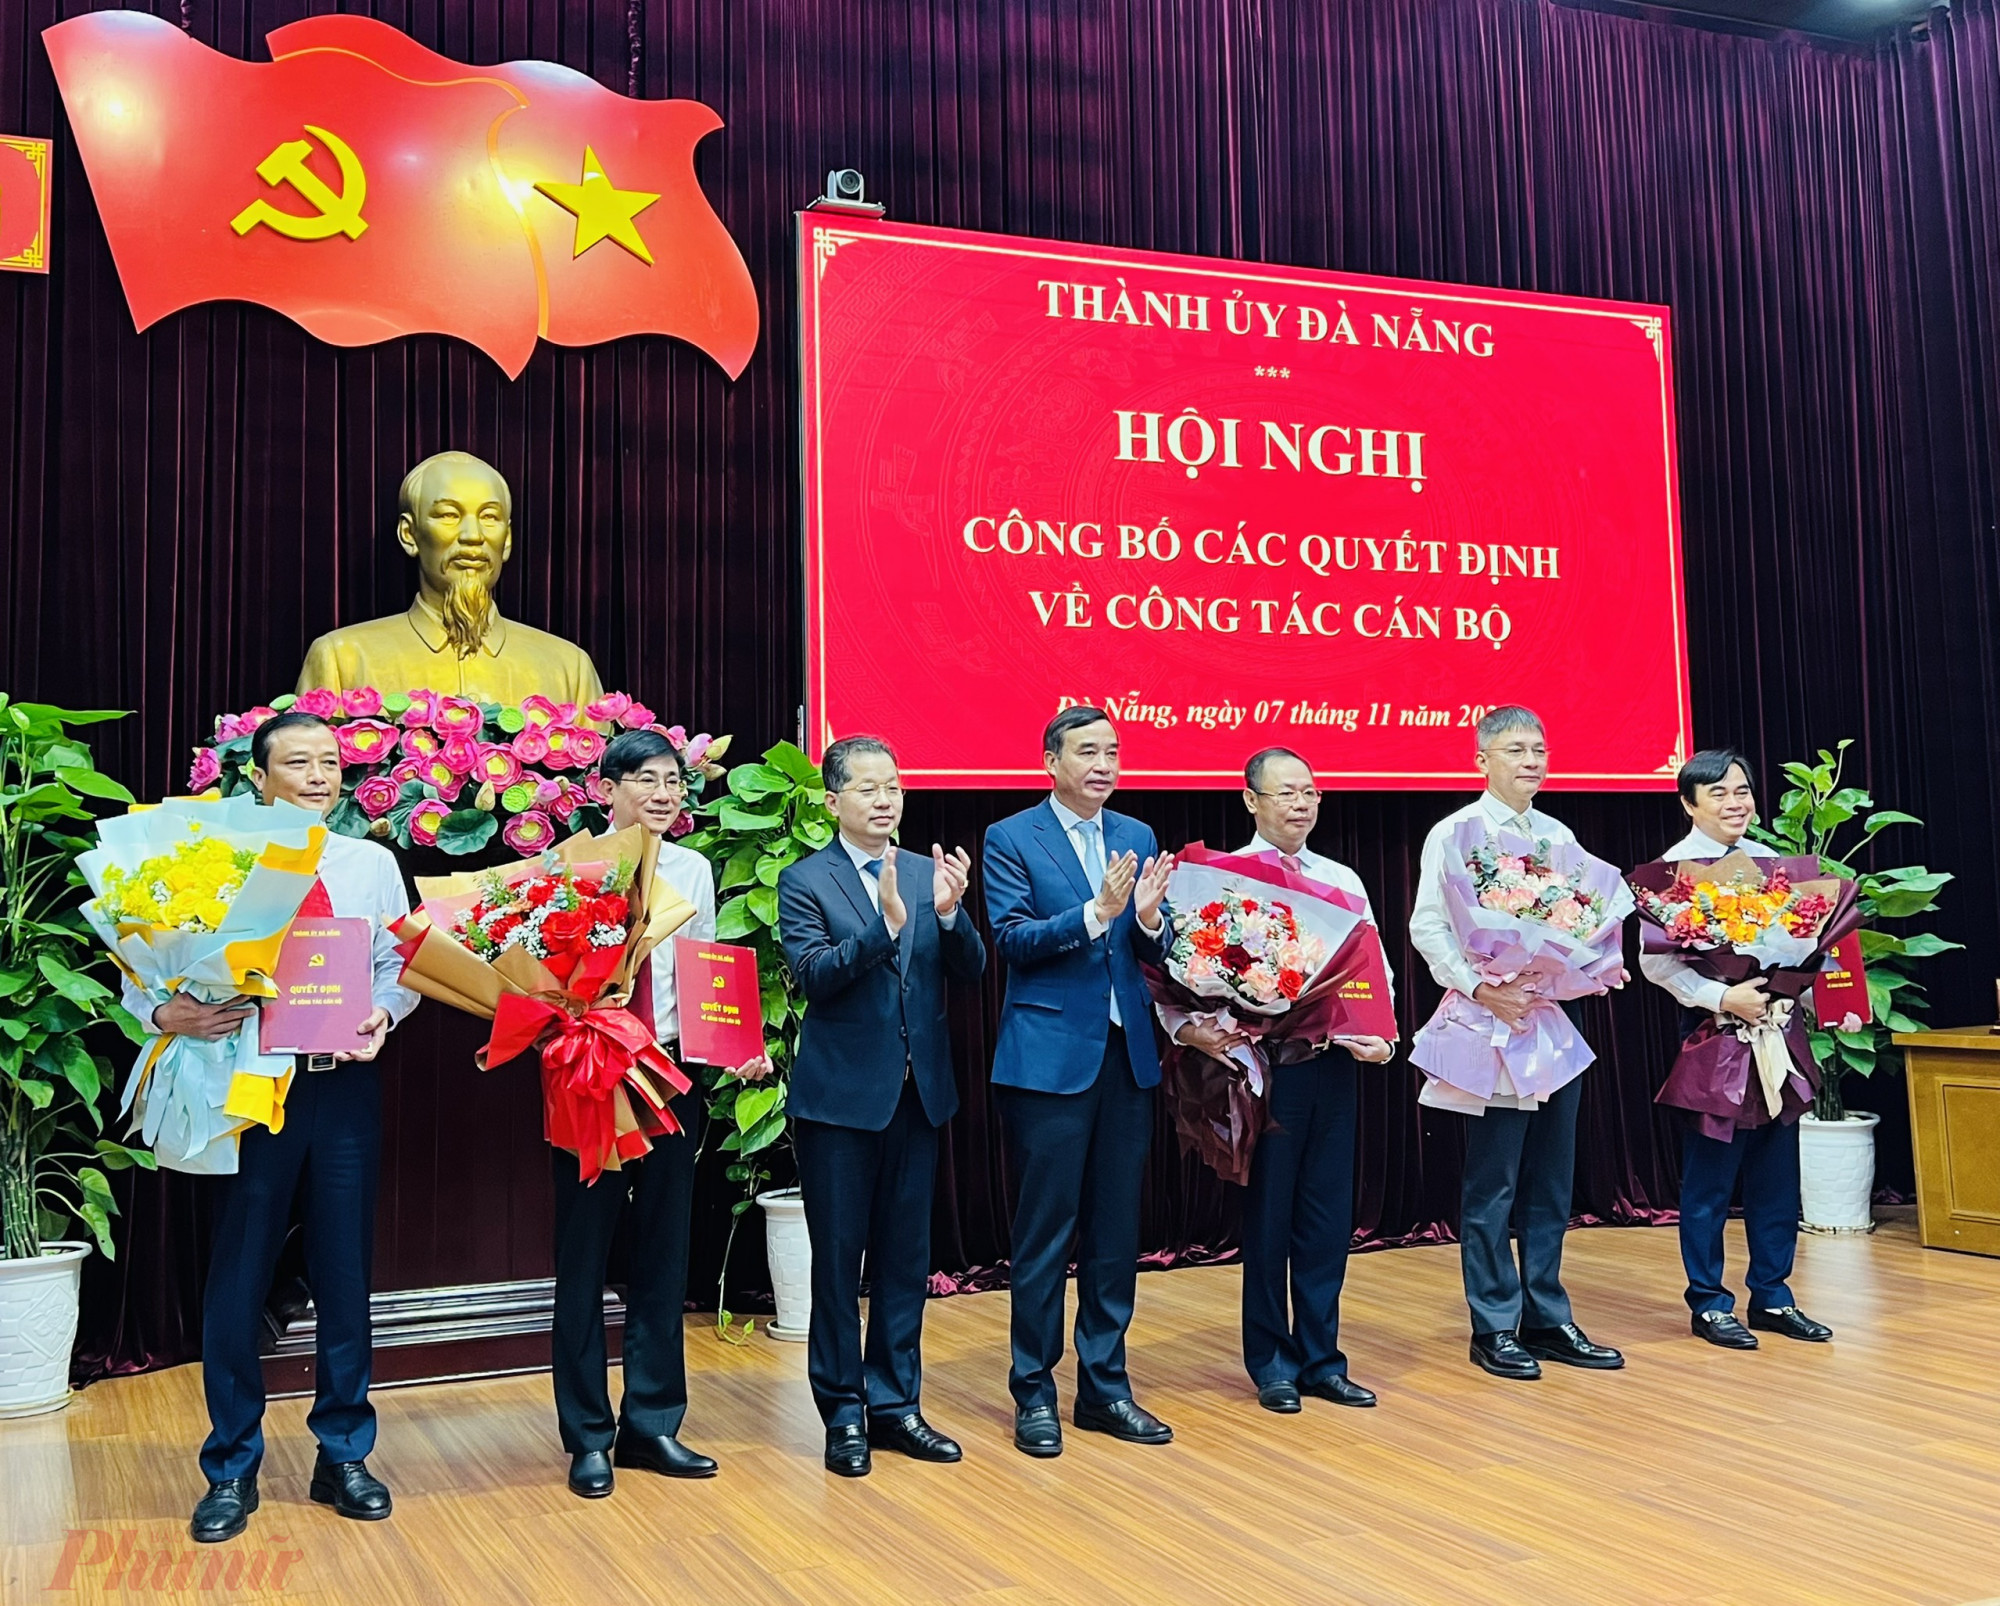 Lãnh đạo Thành ủy Đà Nẵng trao quyết định và tặng hoa các nhân sự được điều động